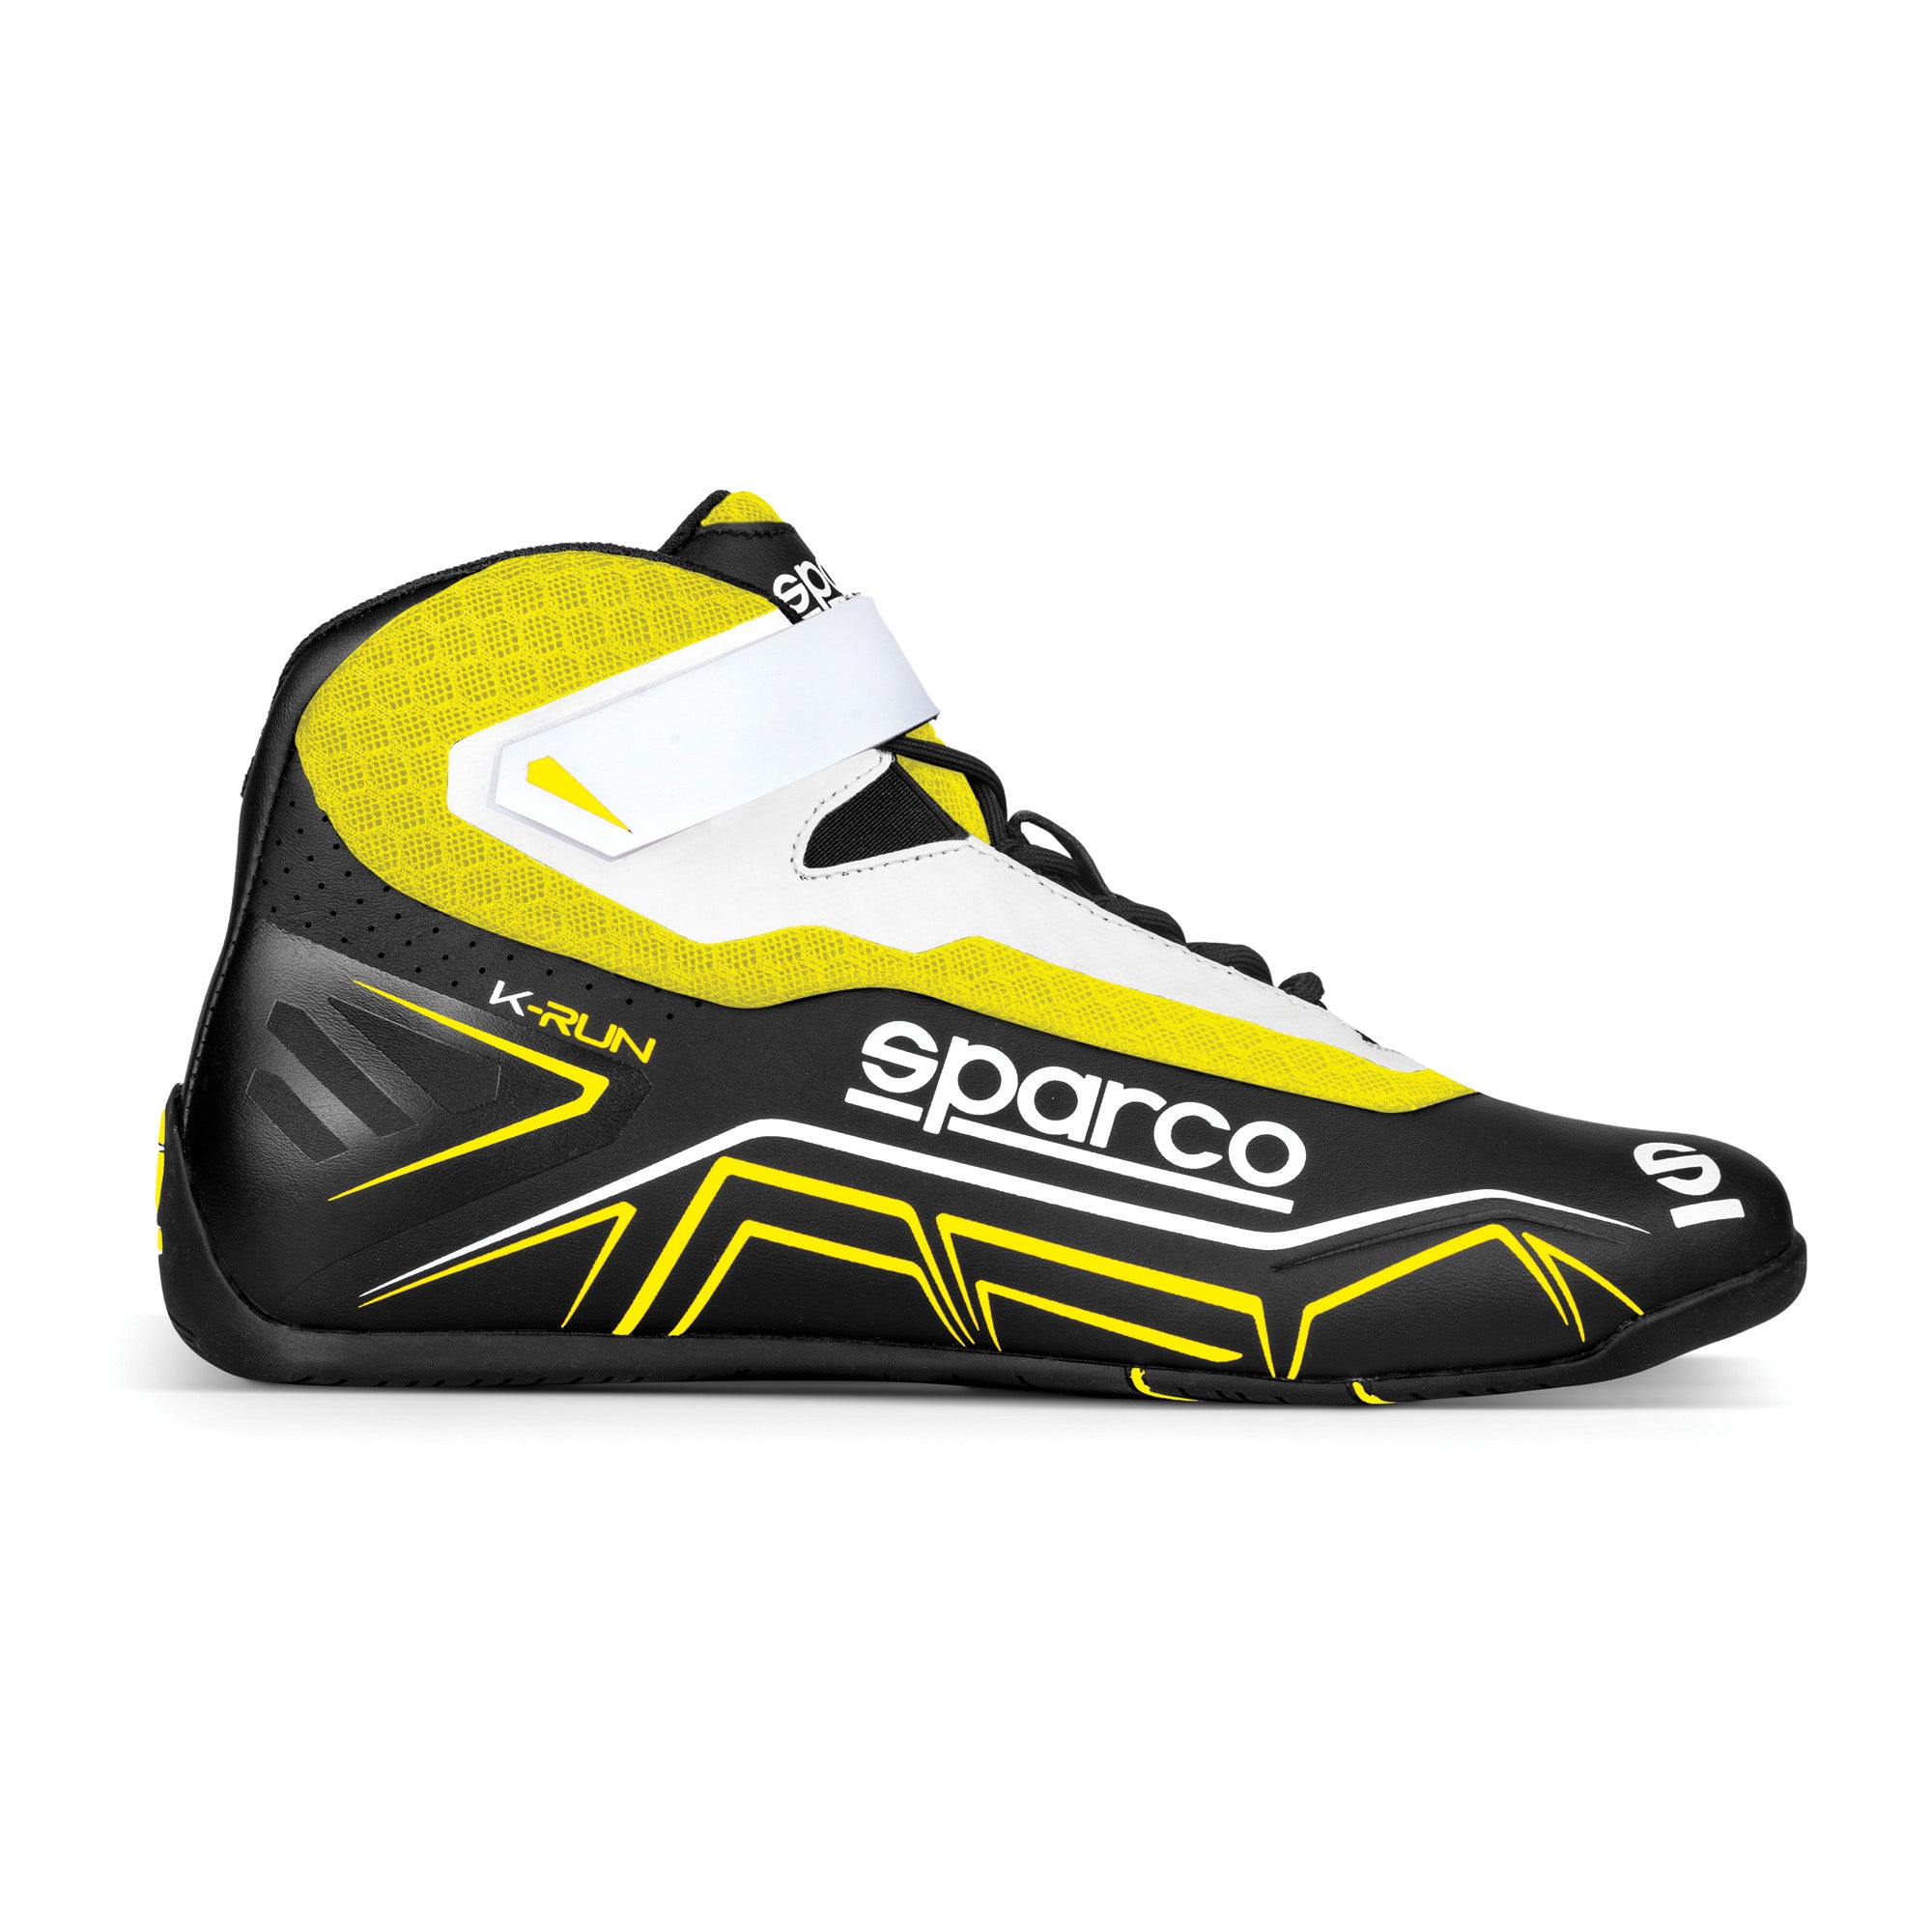 Sparco K-Run Karting Shoe